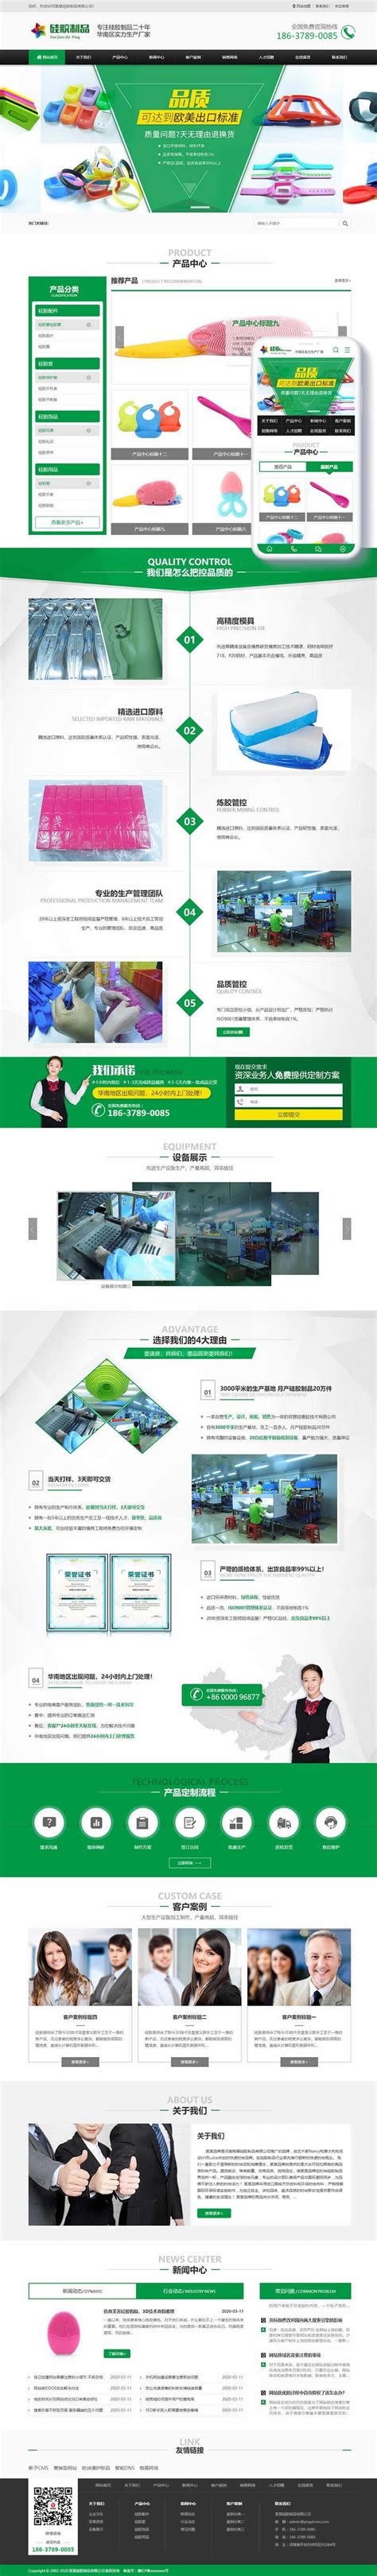 北京(PC+WAP)绿色硅胶橡胶制品pbootcms网站模板 营销型玩具制品网站源码下载-影子cms